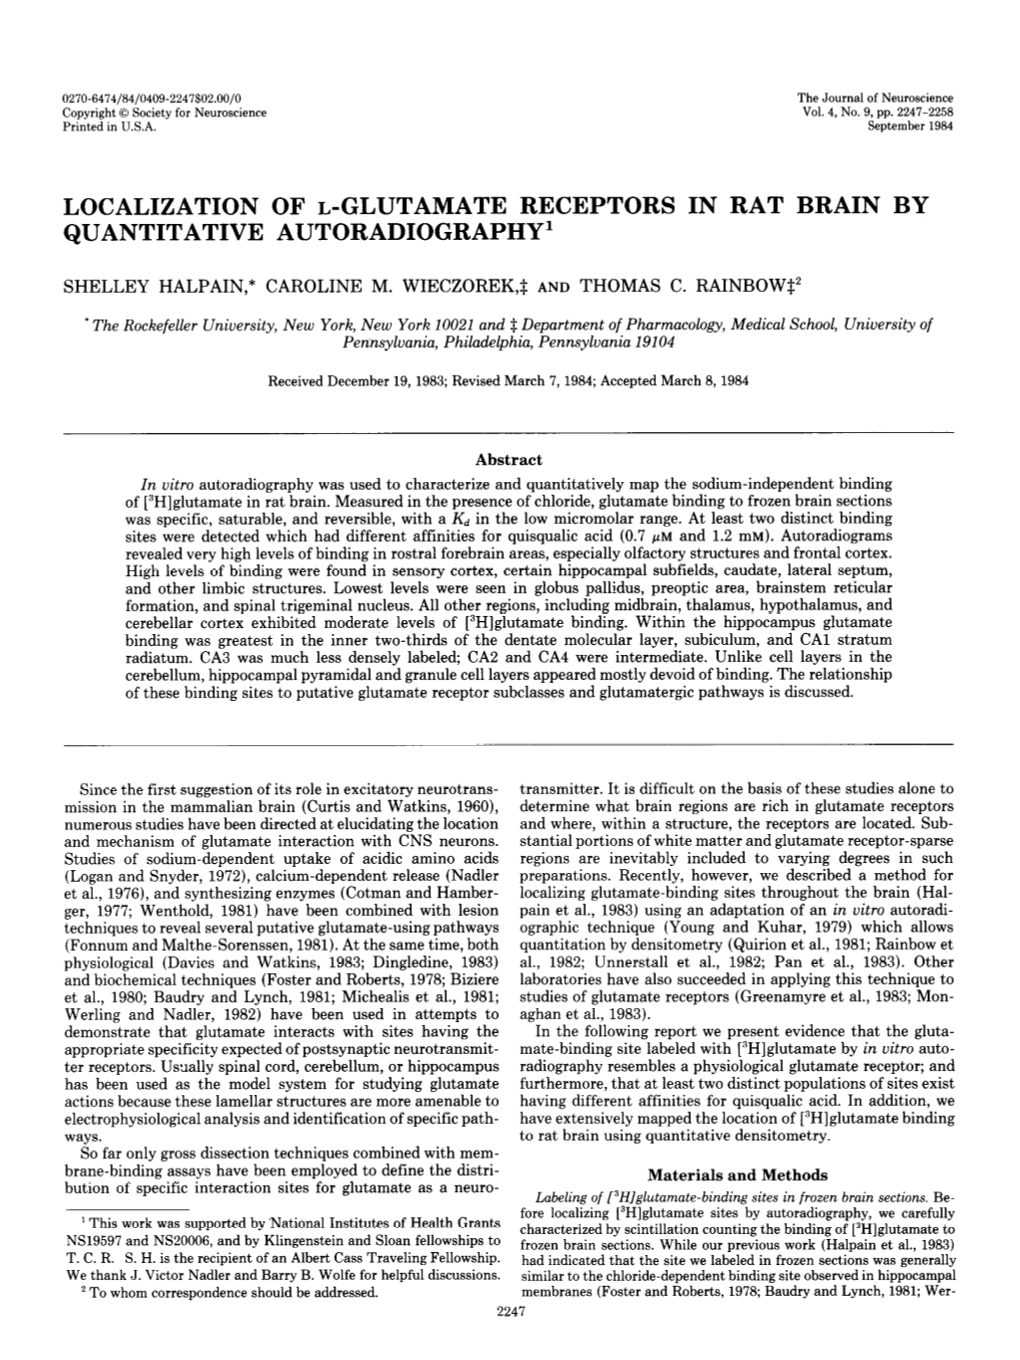 Localization of L-Glutamate Receptors in Rat Brain by Quantitative Autoradiography’